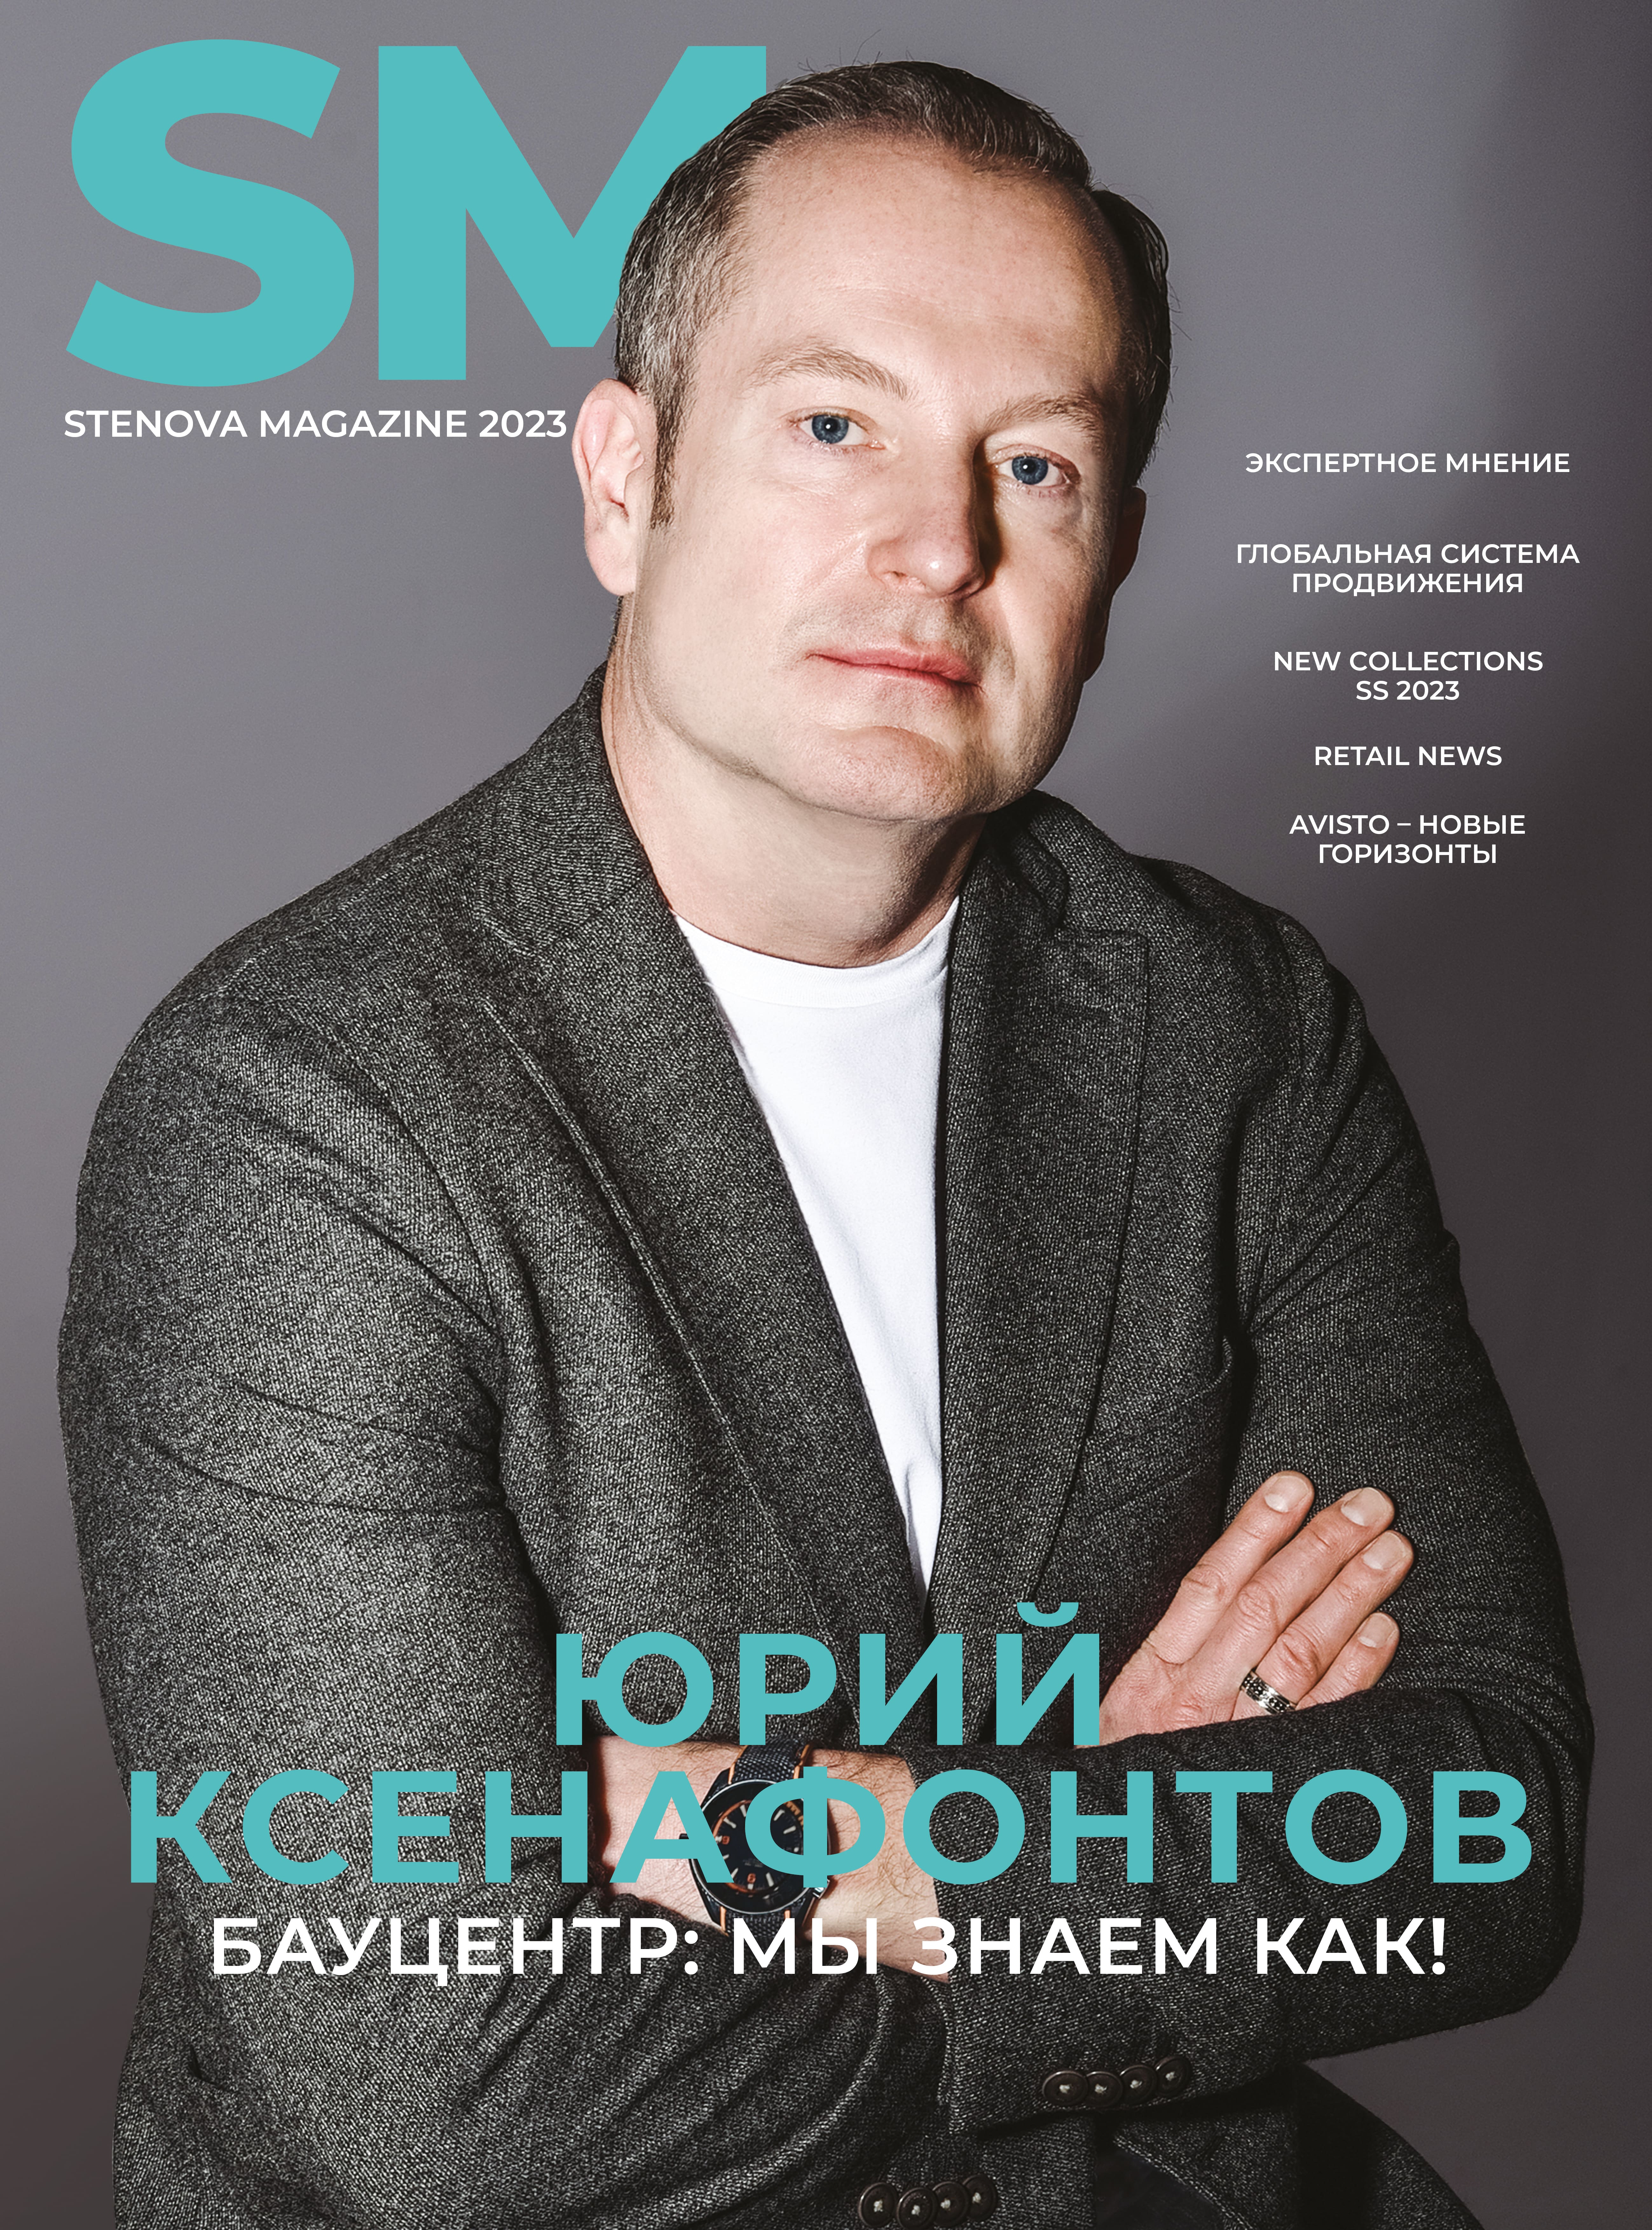 Stenova Magazine 2023